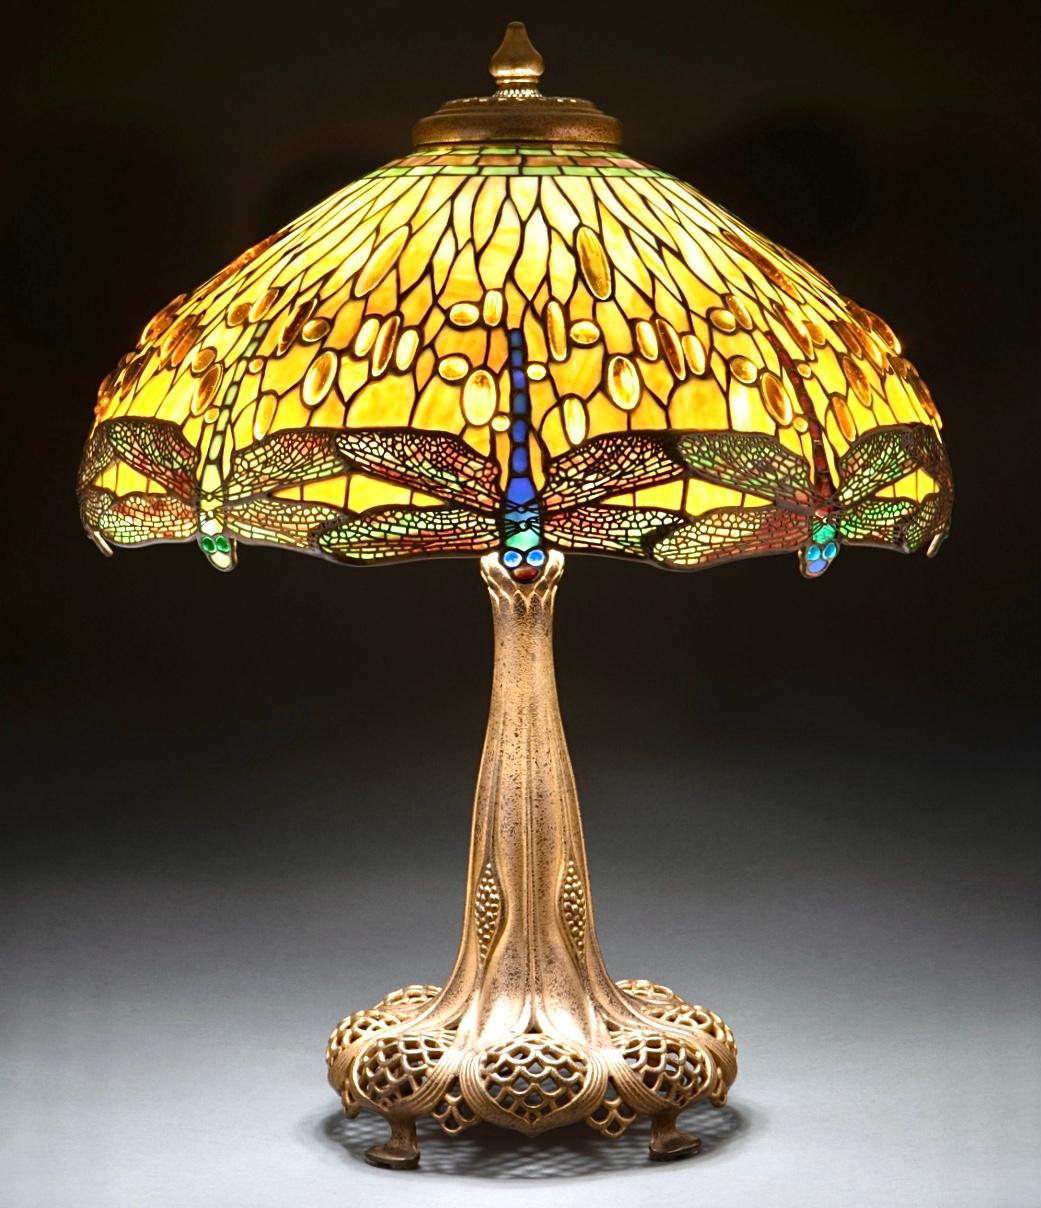 Tiffany Studios Bleiglas und vergoldete Bronze Jewell Drophead Dragonfly Tischlampe, um 1910. 

Um die Jahrhundertwende stellte Clara Driscoll, die Leiterin der Glasschleiferei für Frauen und der Kopf hinter einigen der berühmtesten